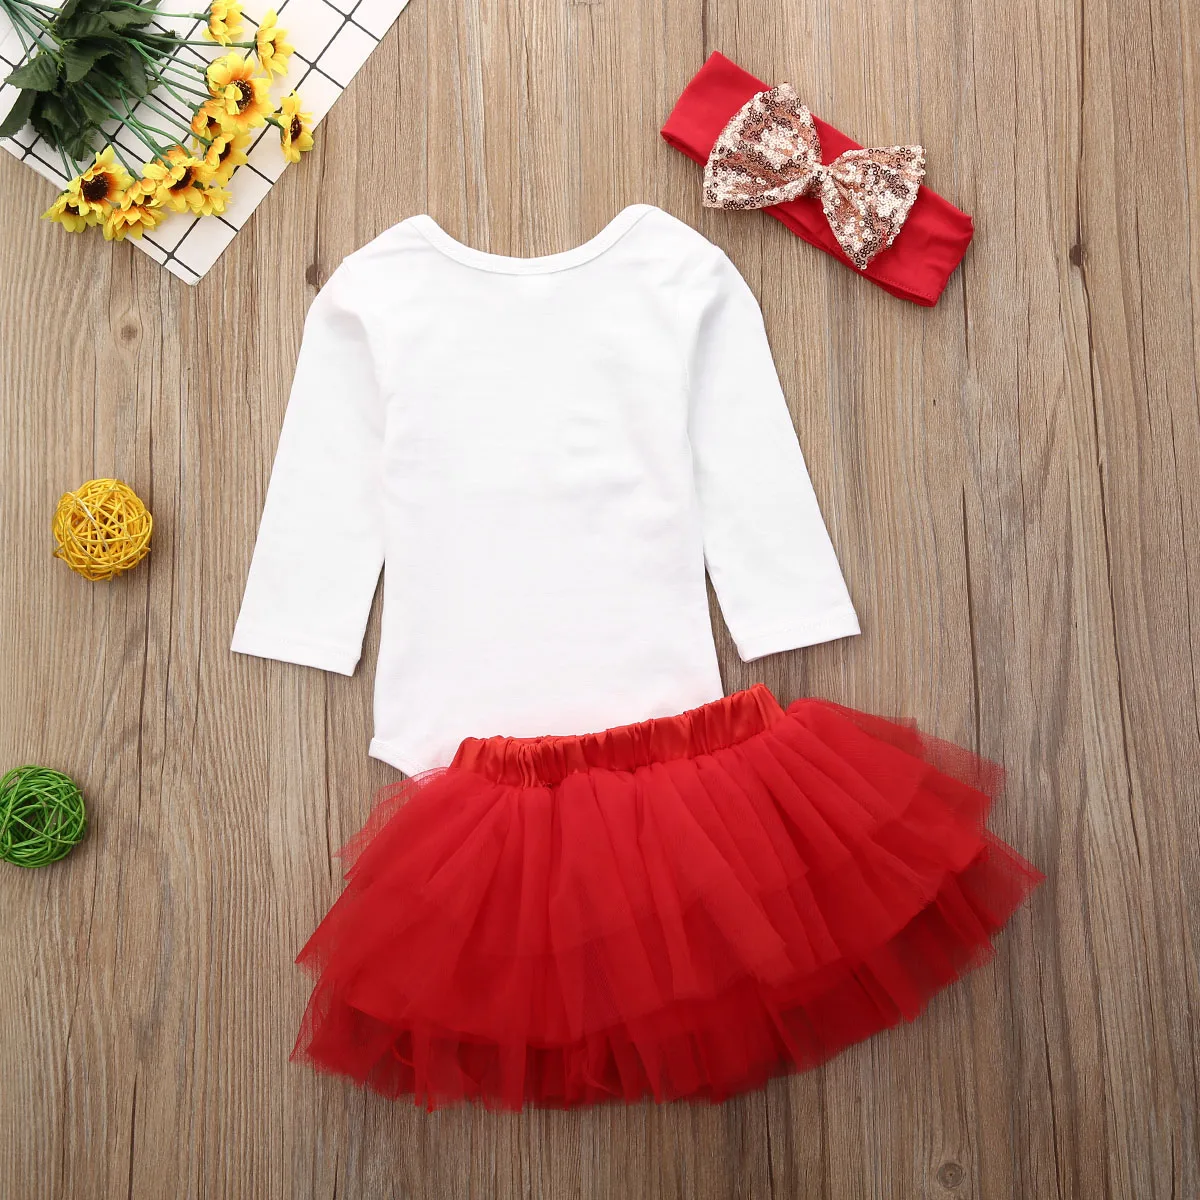 Английская Рождественская одежда комплект одежды для новорожденных девочек, комбинезон с юбкой-пачкой осенний комплект одежды для детей от 0 до 18 месяцев